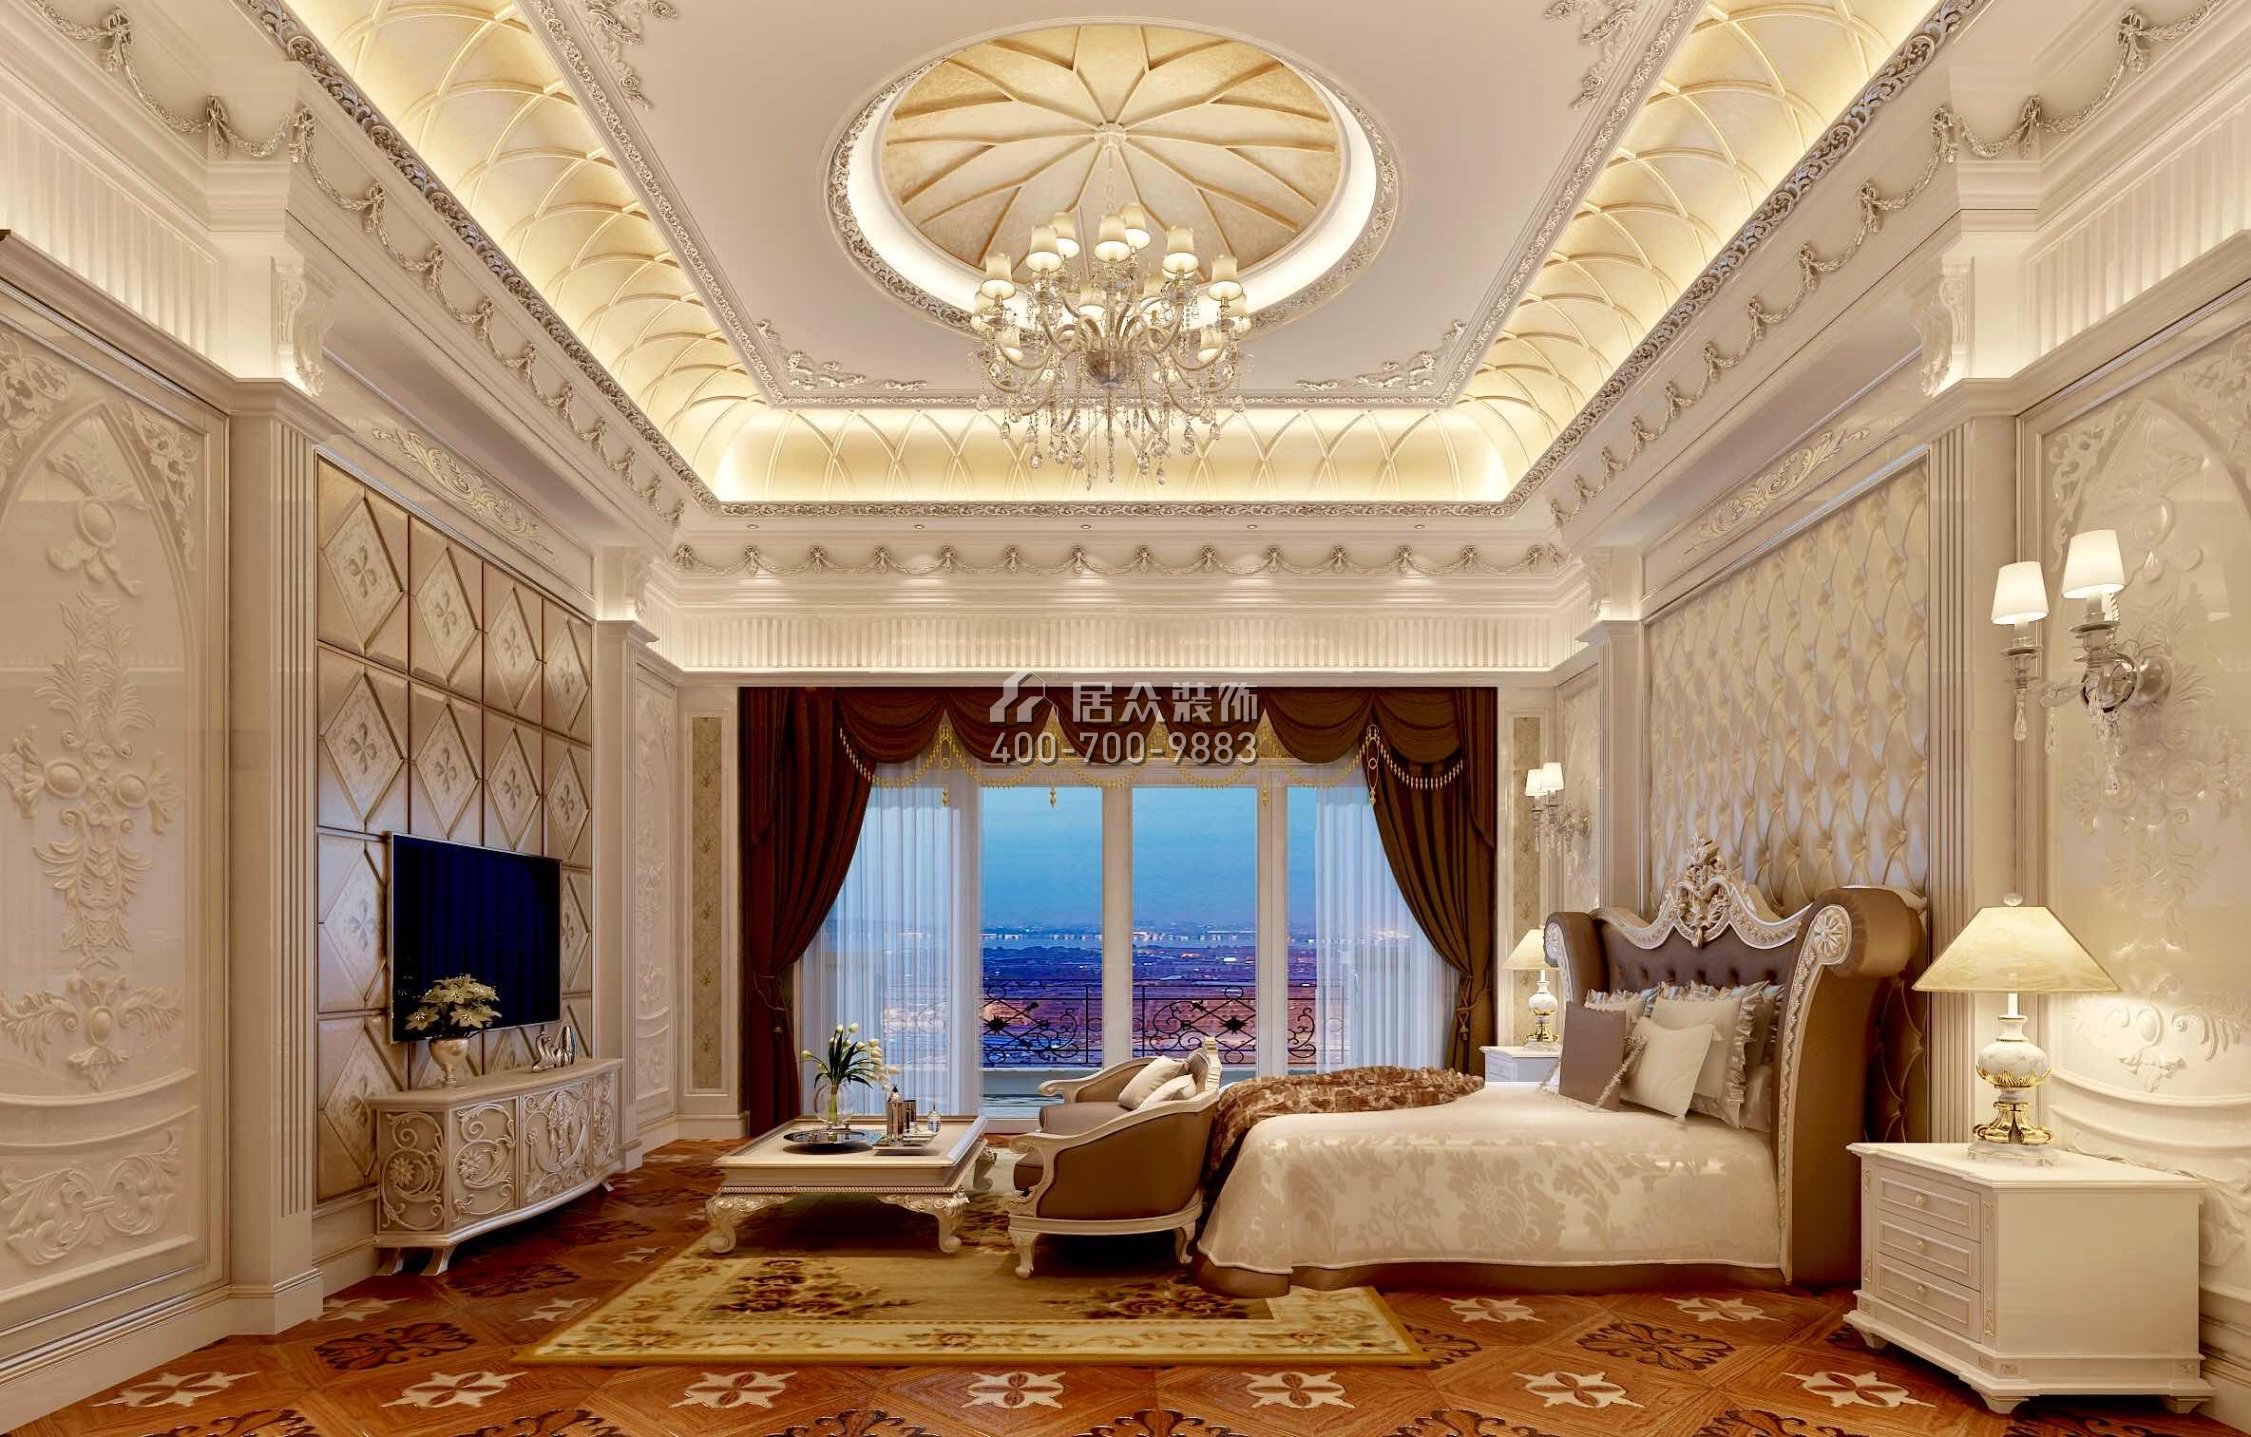 海逸豪庭800平方米欧式风格别墅户型卧室装修效果图